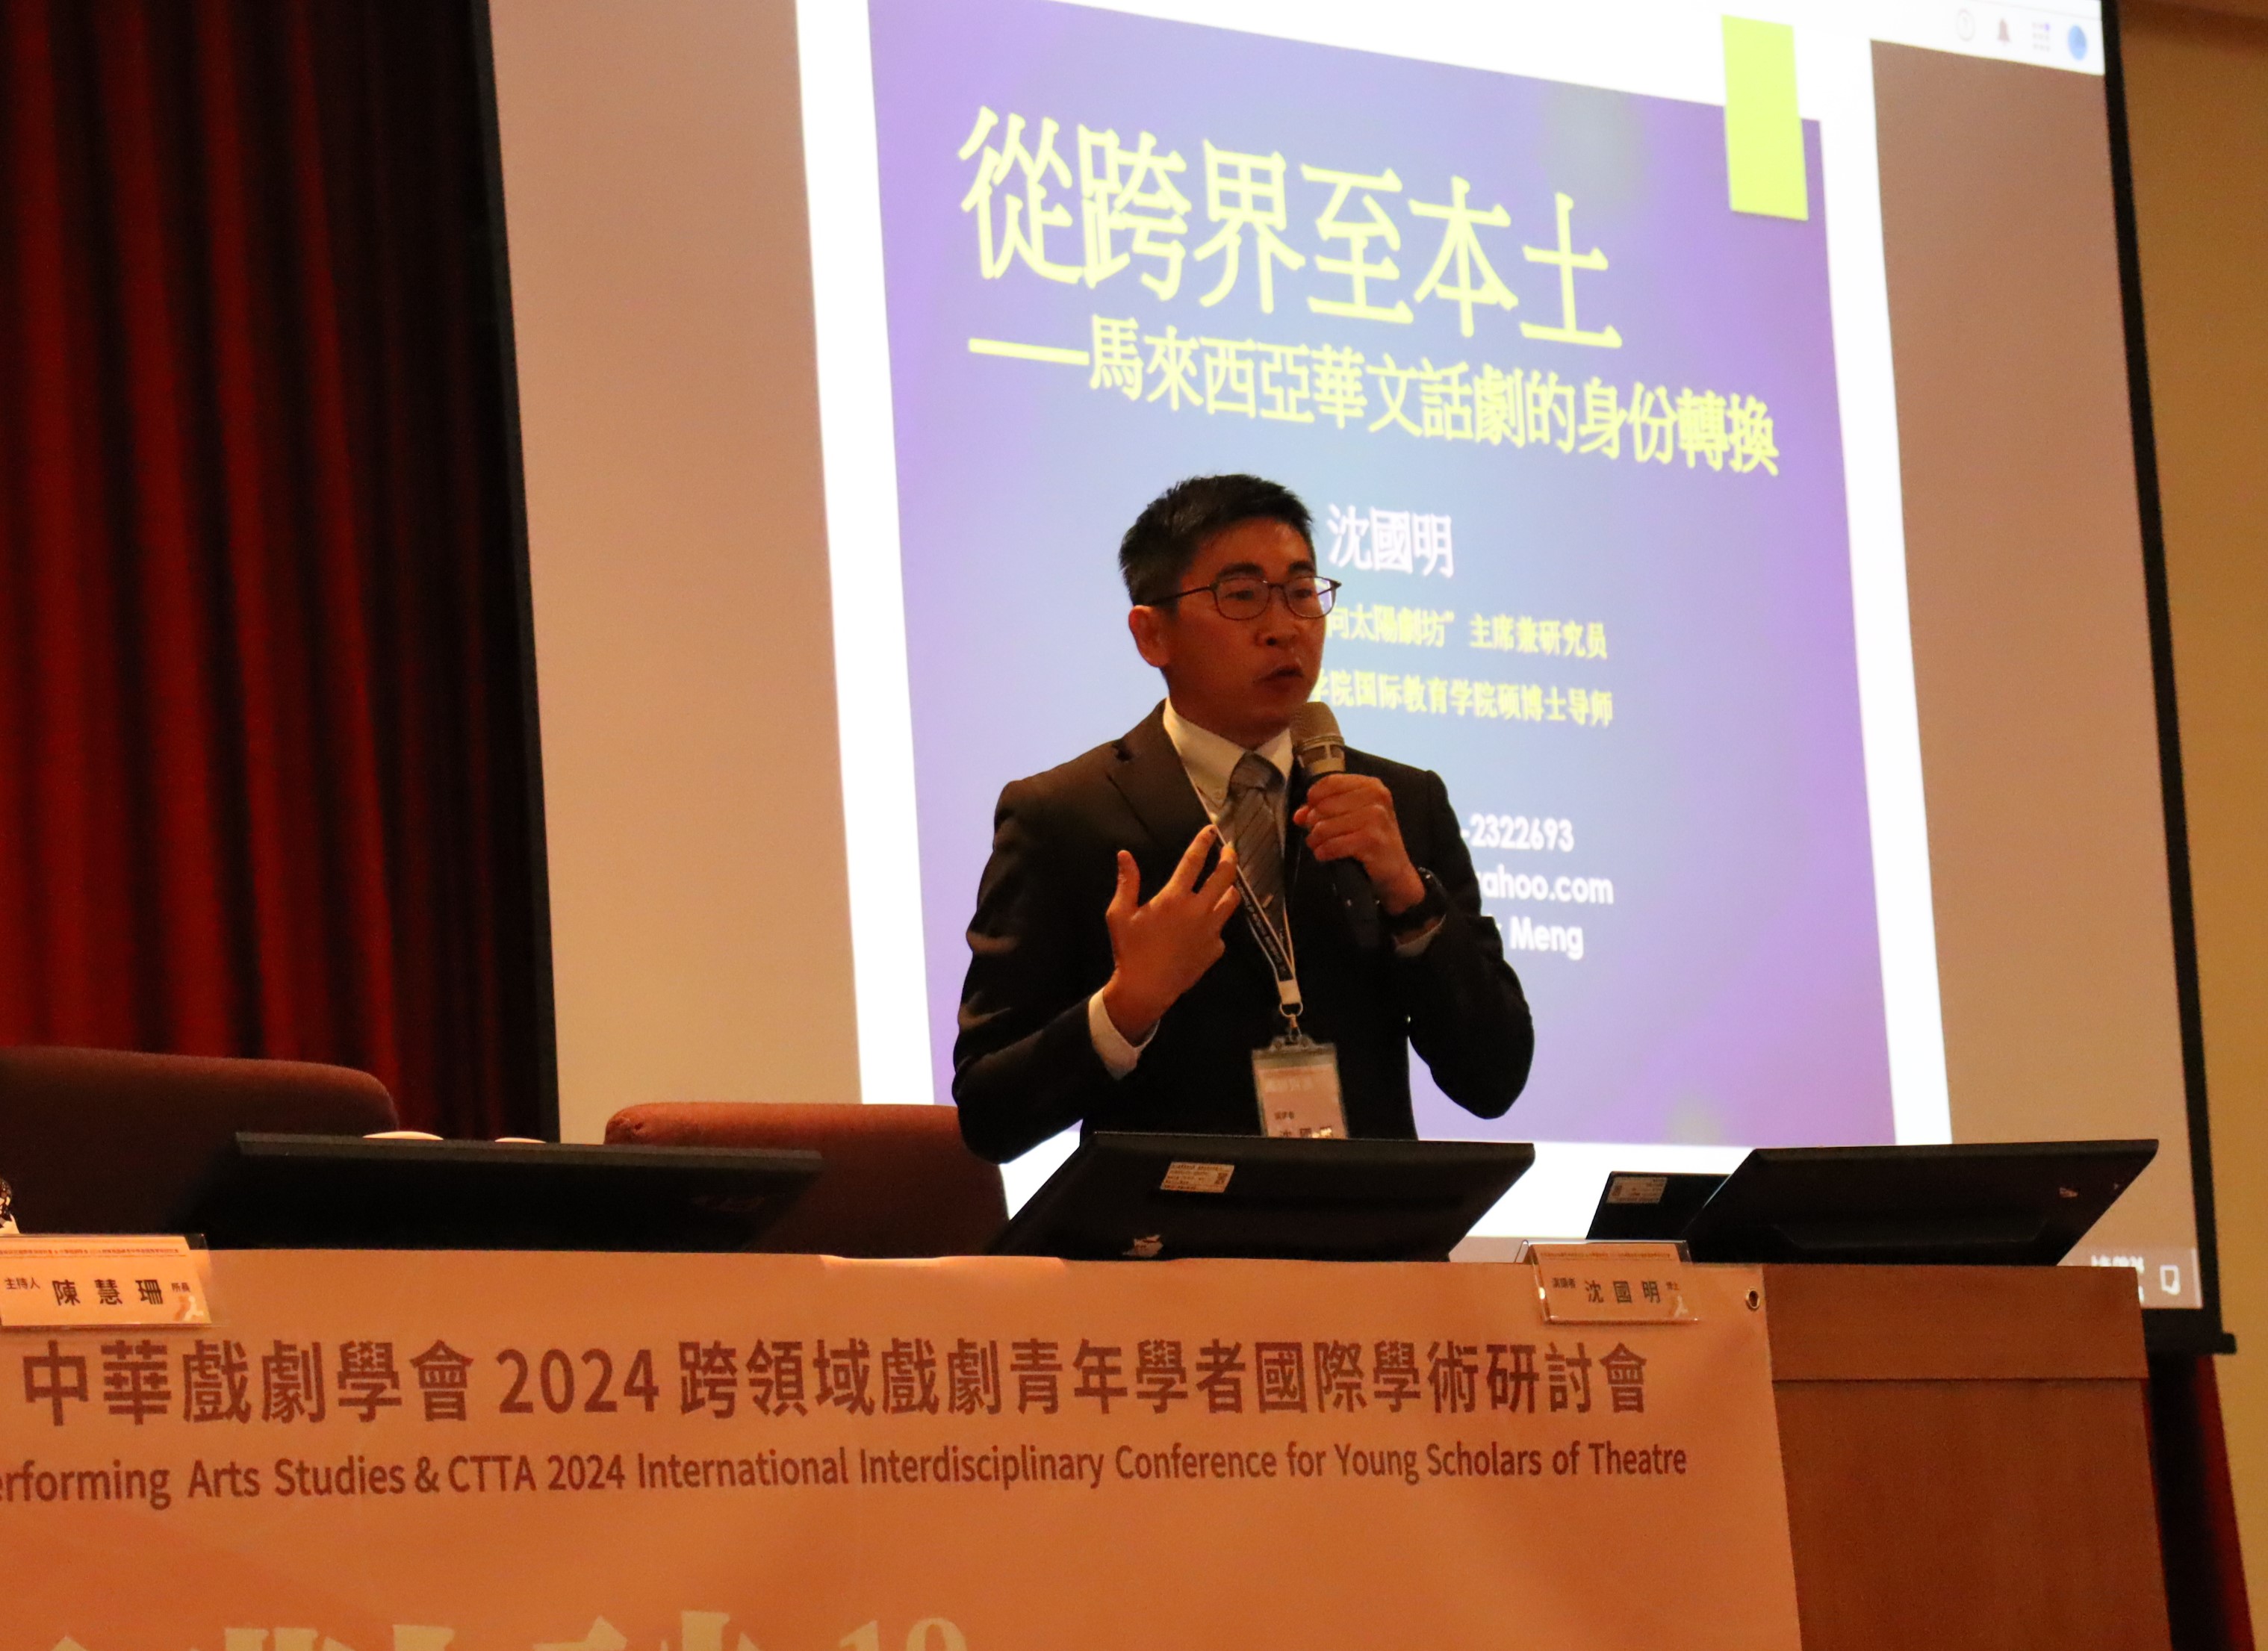 中華戲劇學會2024年跨領域戲劇青年學者國際學術研討會